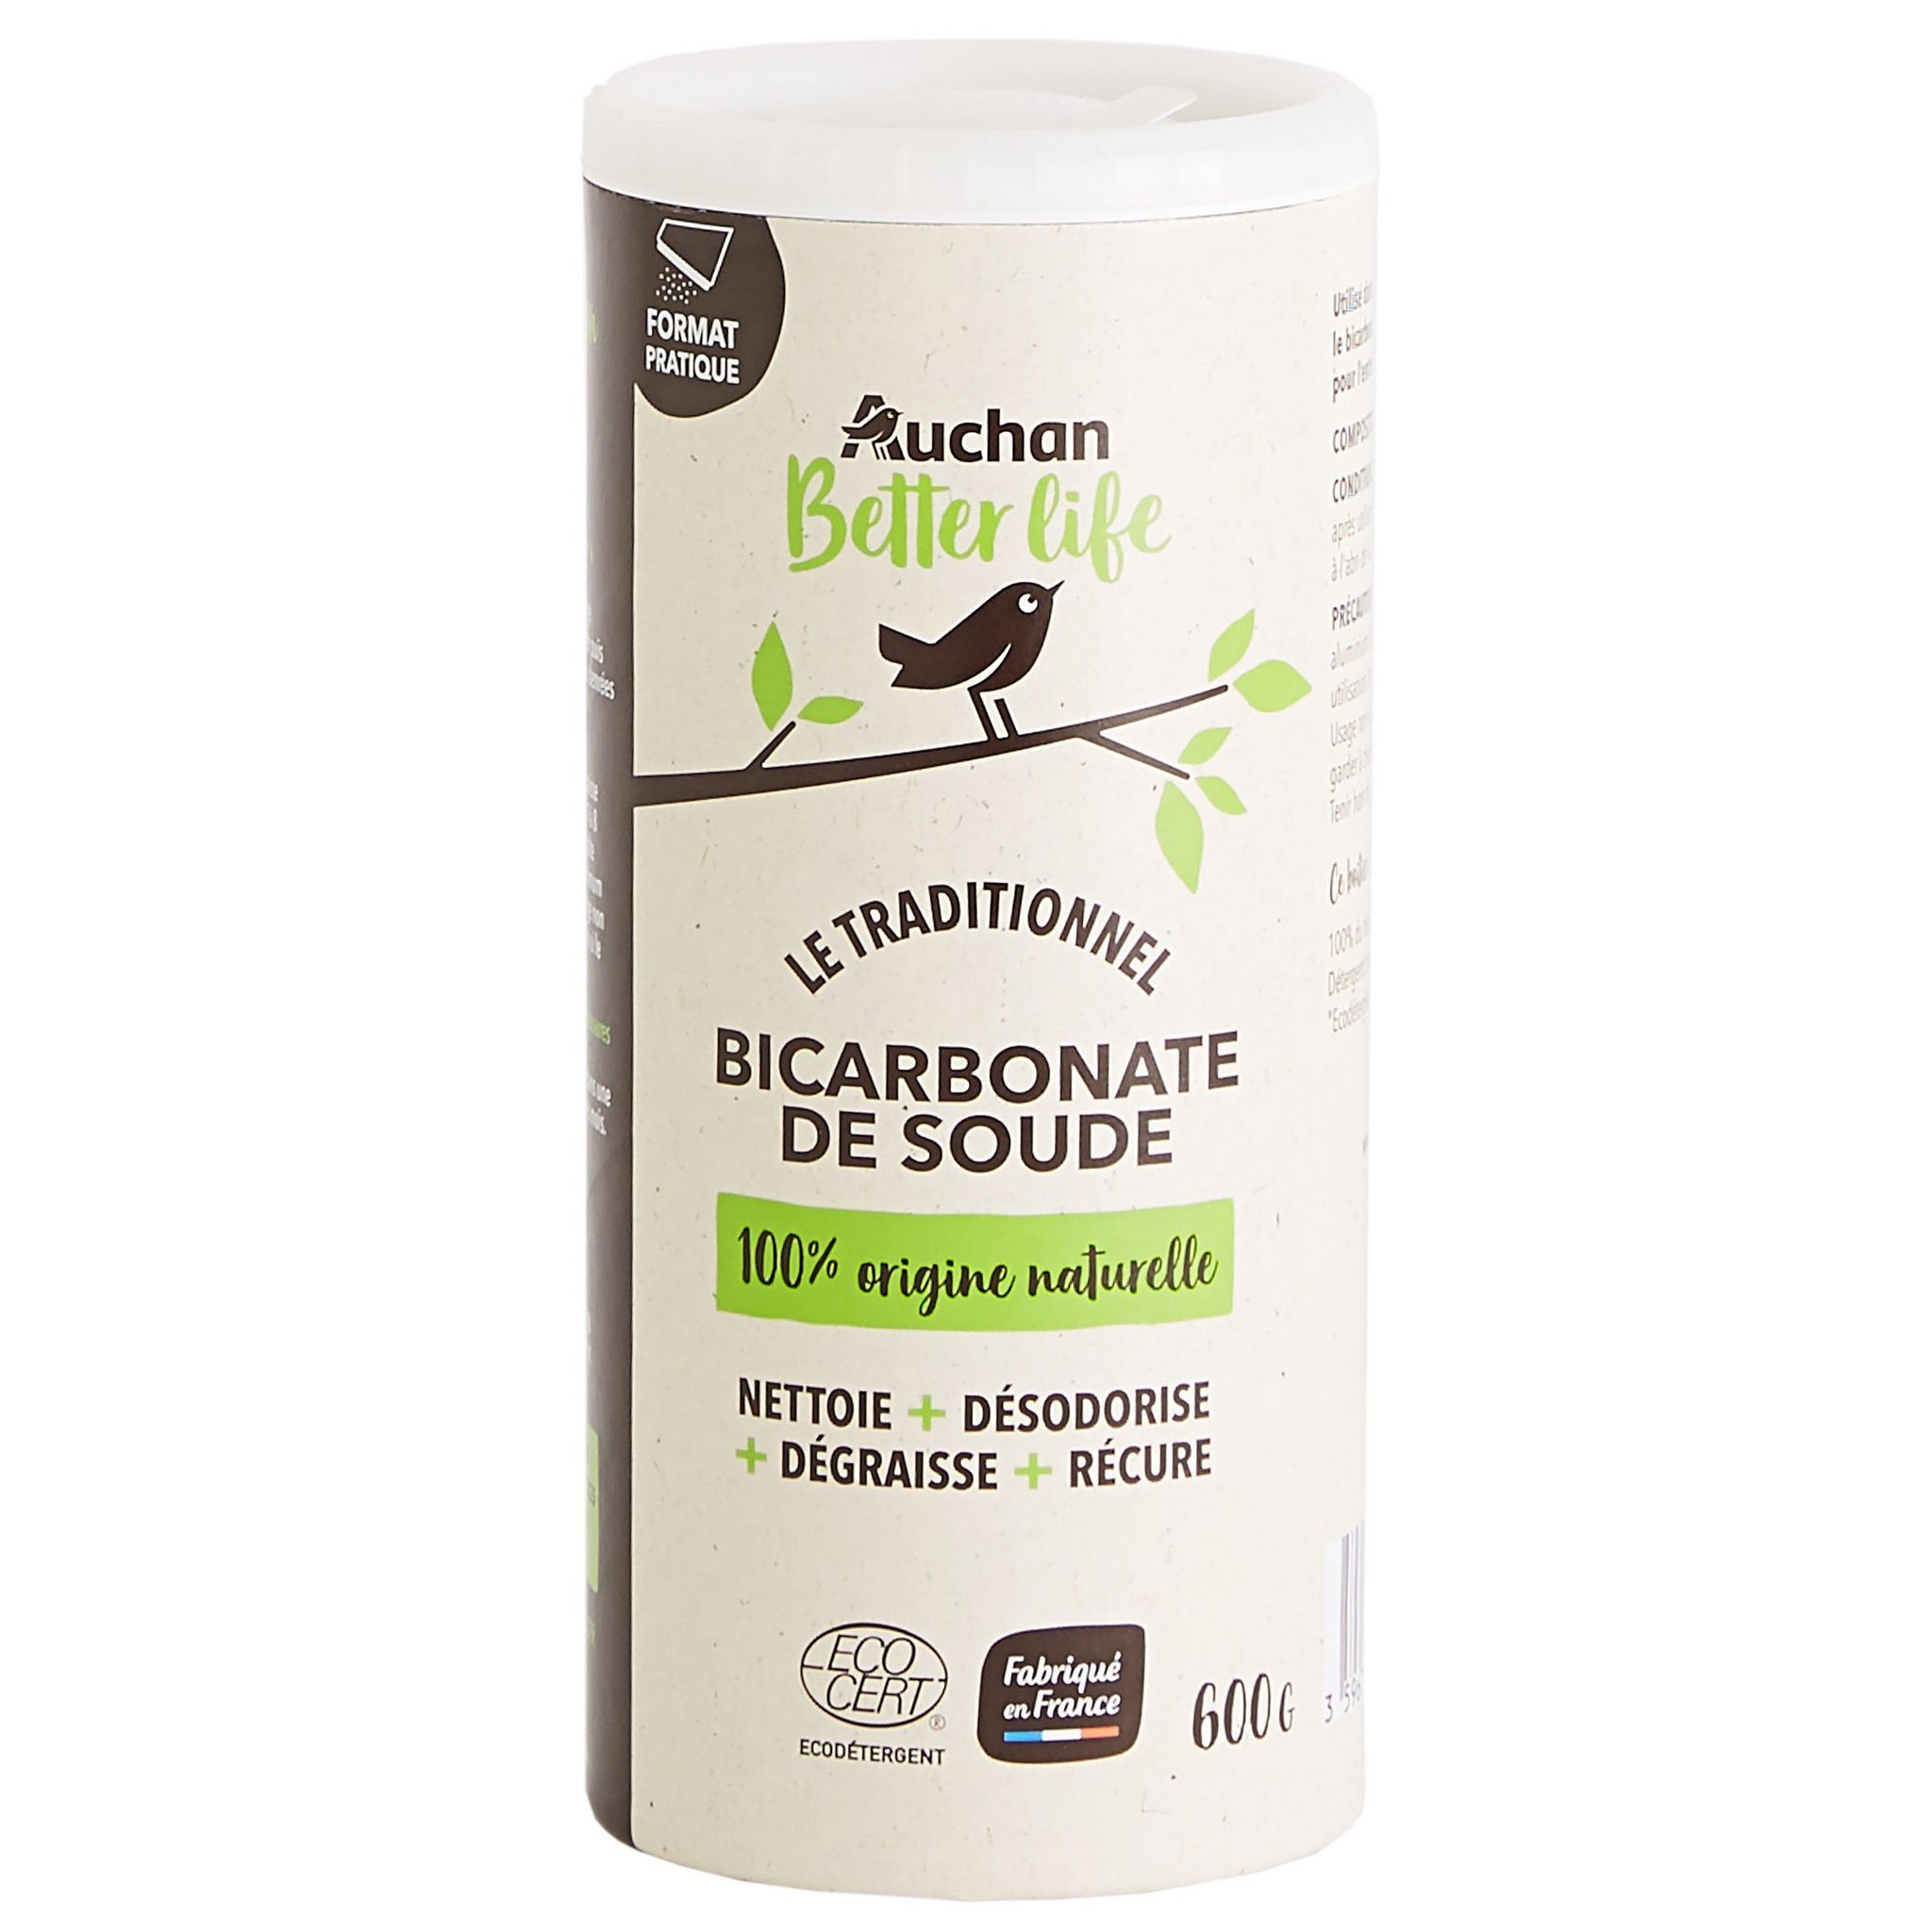 Acheter Biovie Bicarbonate de soude ménager multi-usages Ecocert, 500g